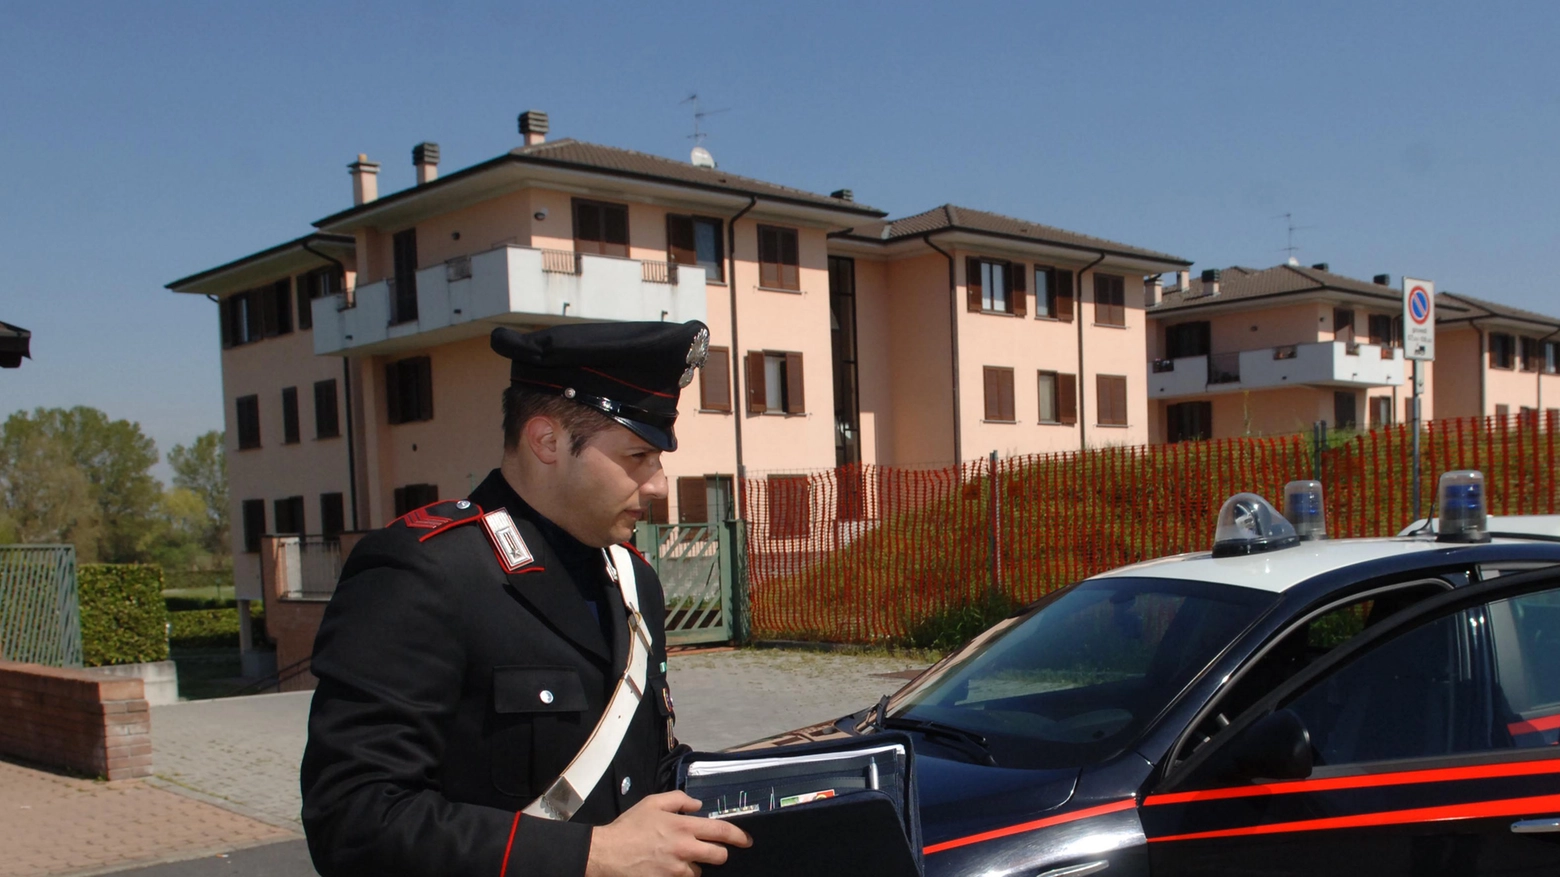 Sulla vicenda hanno indagato i carabinieri